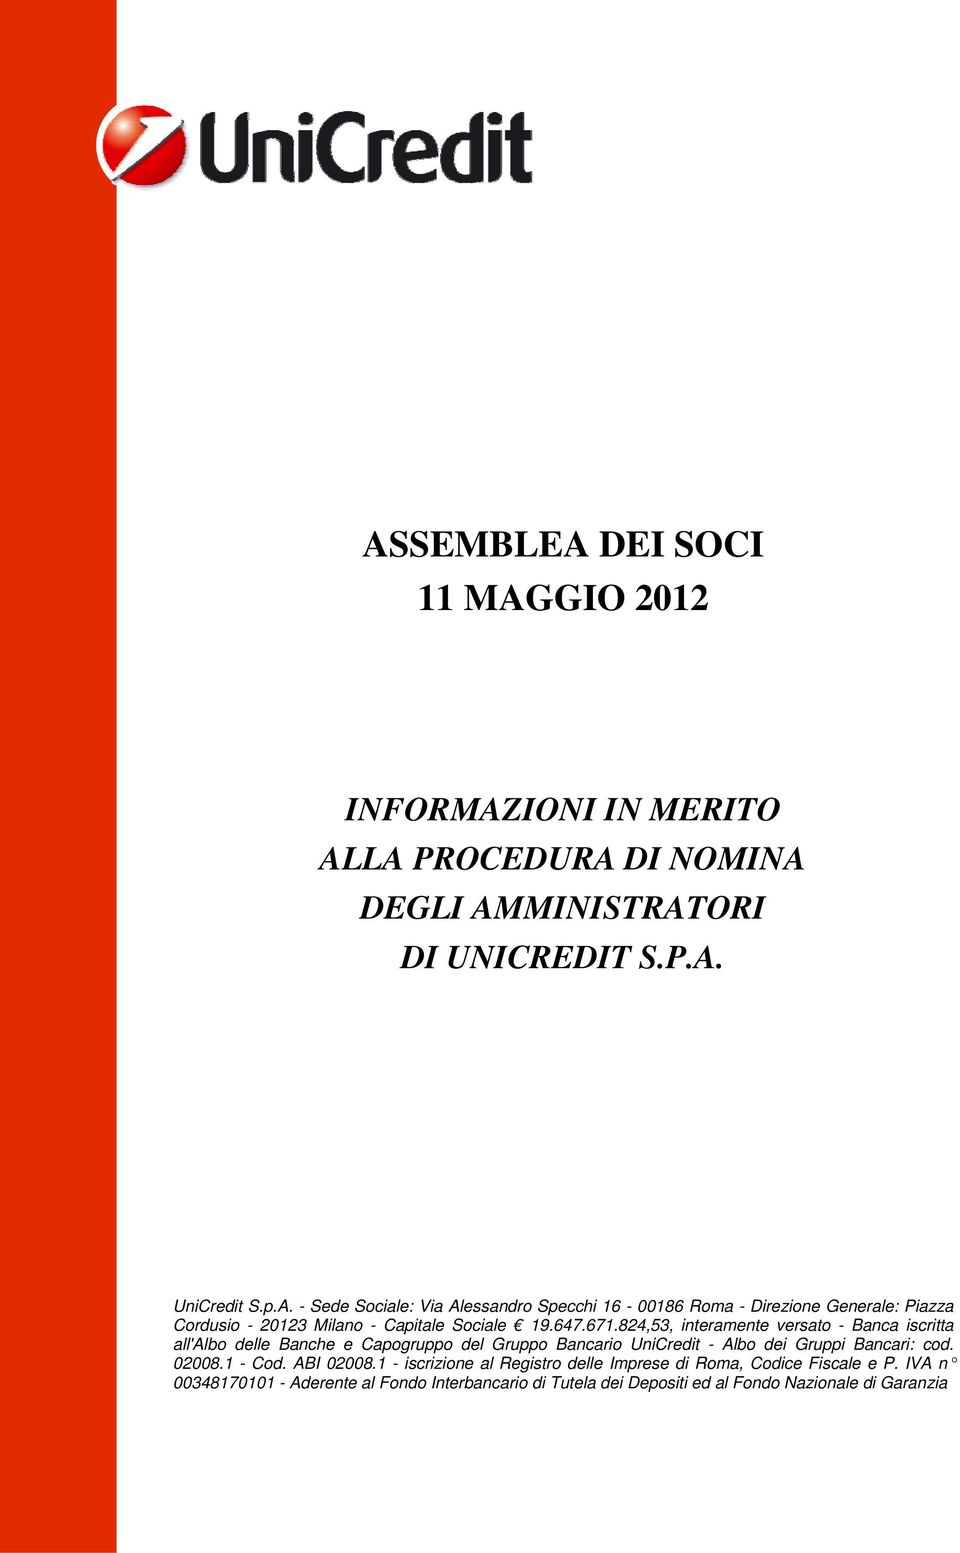 1 - Cod. ABI 02008.1 - iscrizione al Registro delle Imprese di Roma, Codice Fiscale e P.